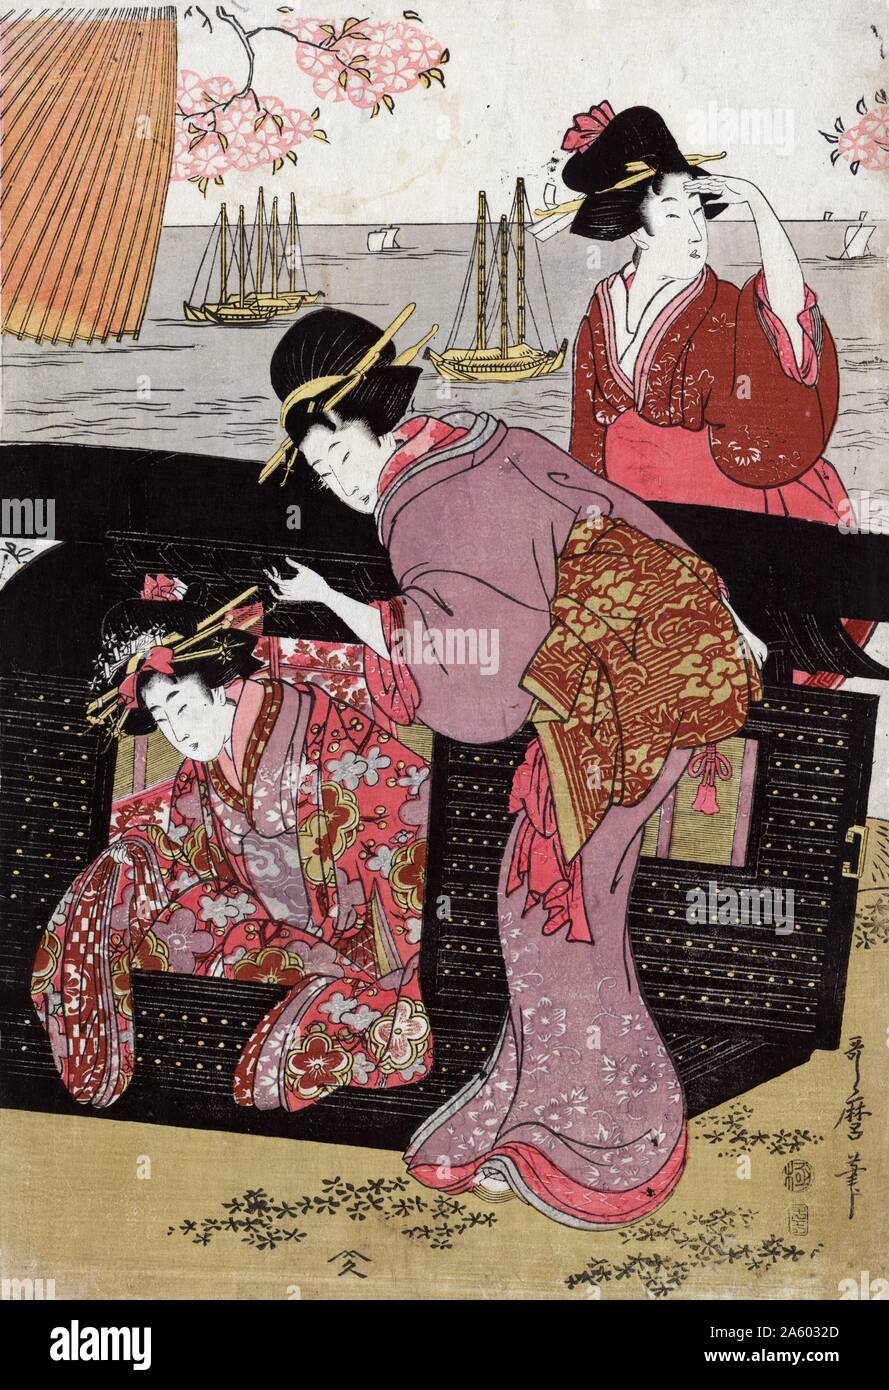 Cherry-visualizzazione a Gotenyama da Utamaro Kitagawa (1753-1806). Stampa di una donna ad aiutare un'altra donna uscire di una portantina e un'altra donna in piedi dietro la sedia, con fiori di ciliegio sopra e barche a vela in background. Foto Stock